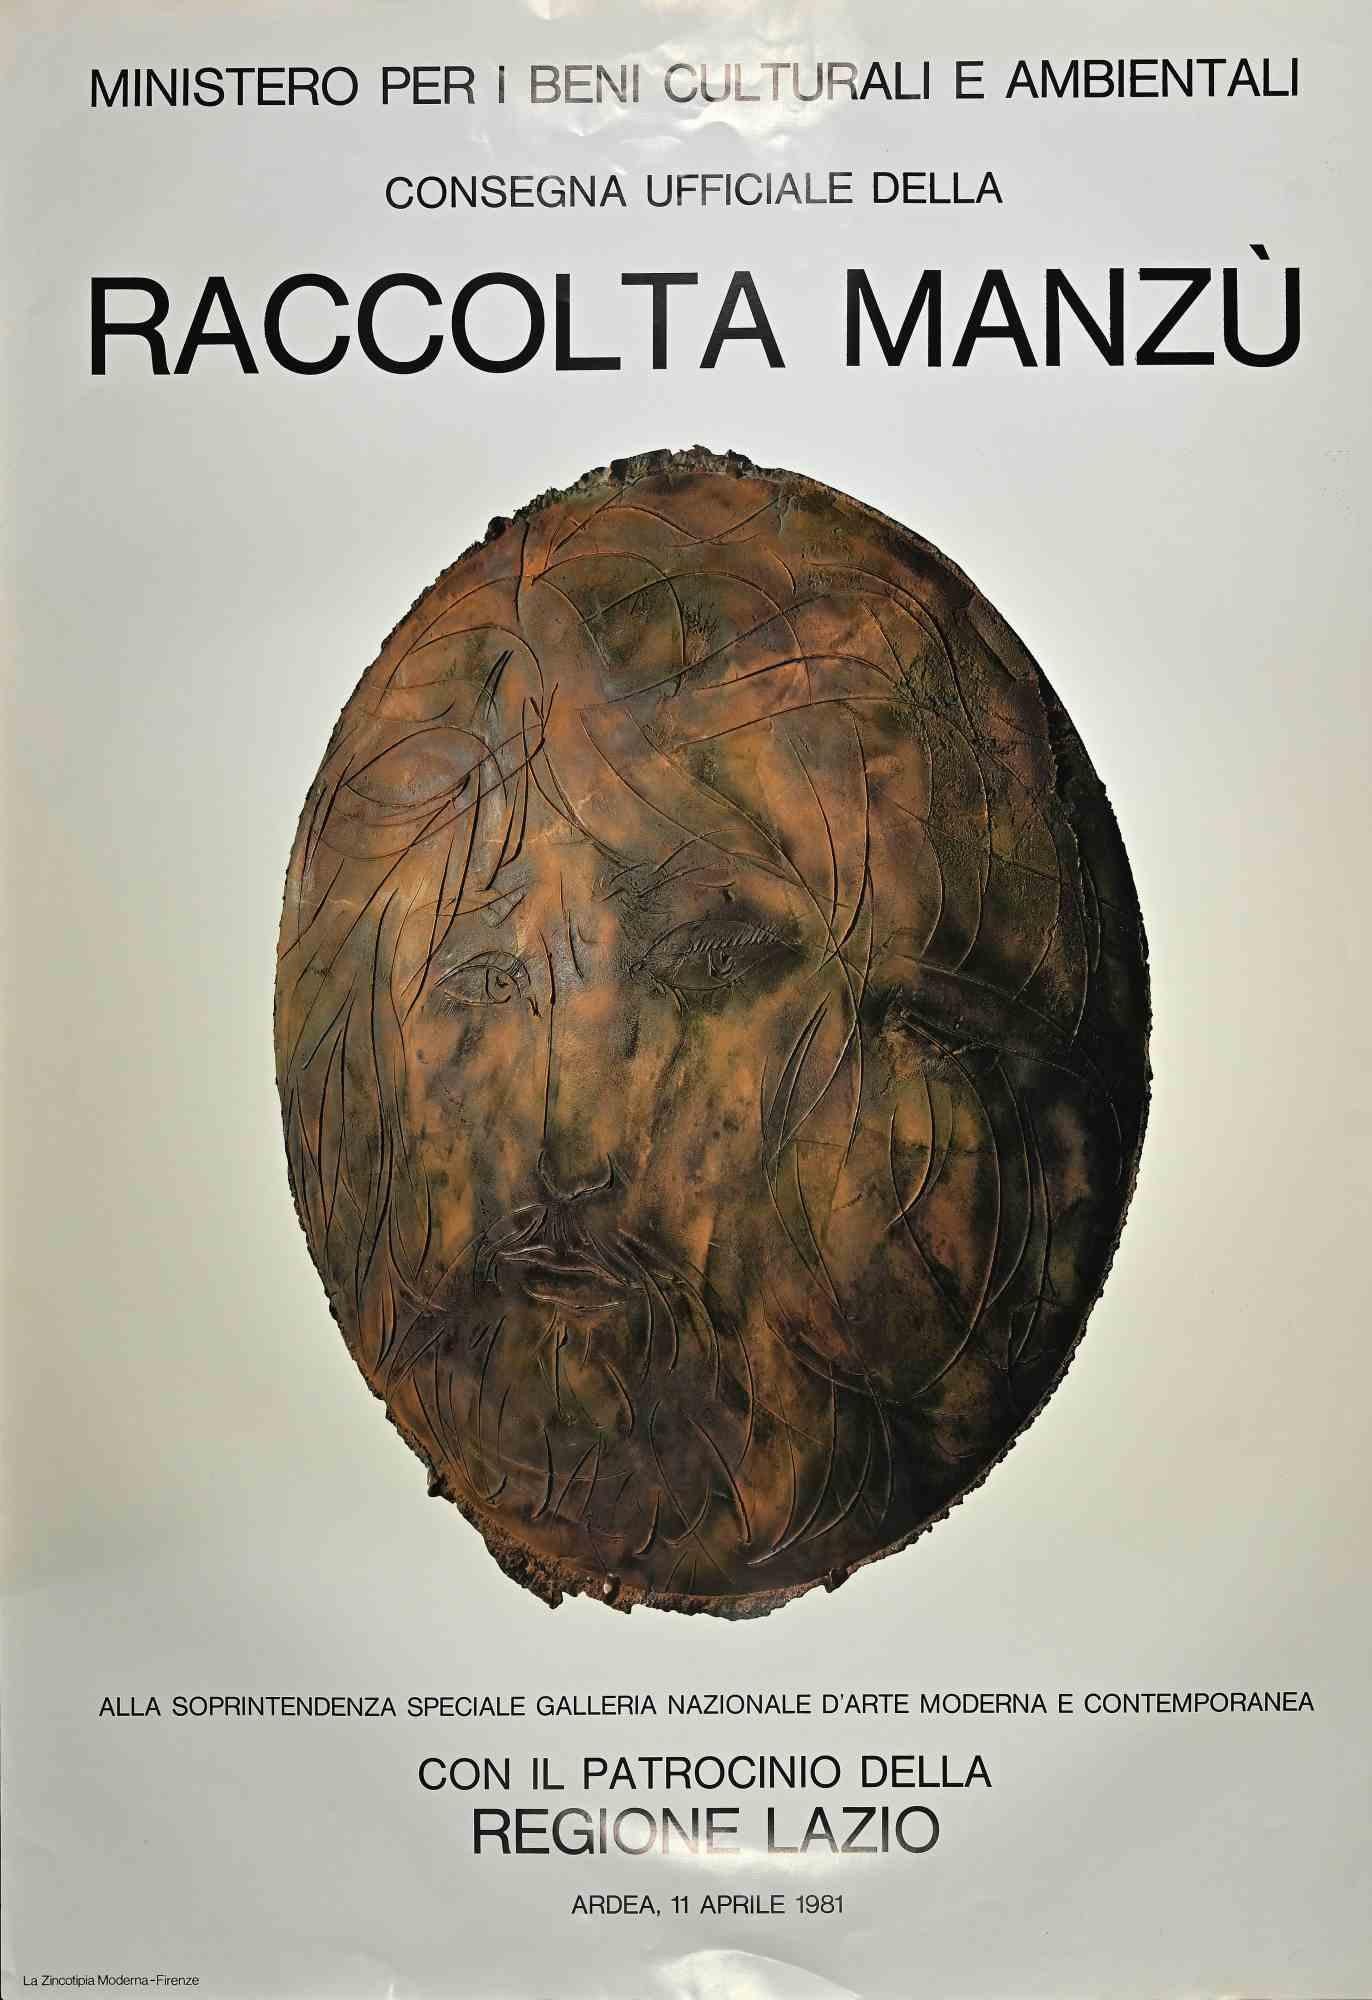 Giacomo Manzú Figurative Print - Manzu Collection - Offset Print after Giacomo Manzu - 1981